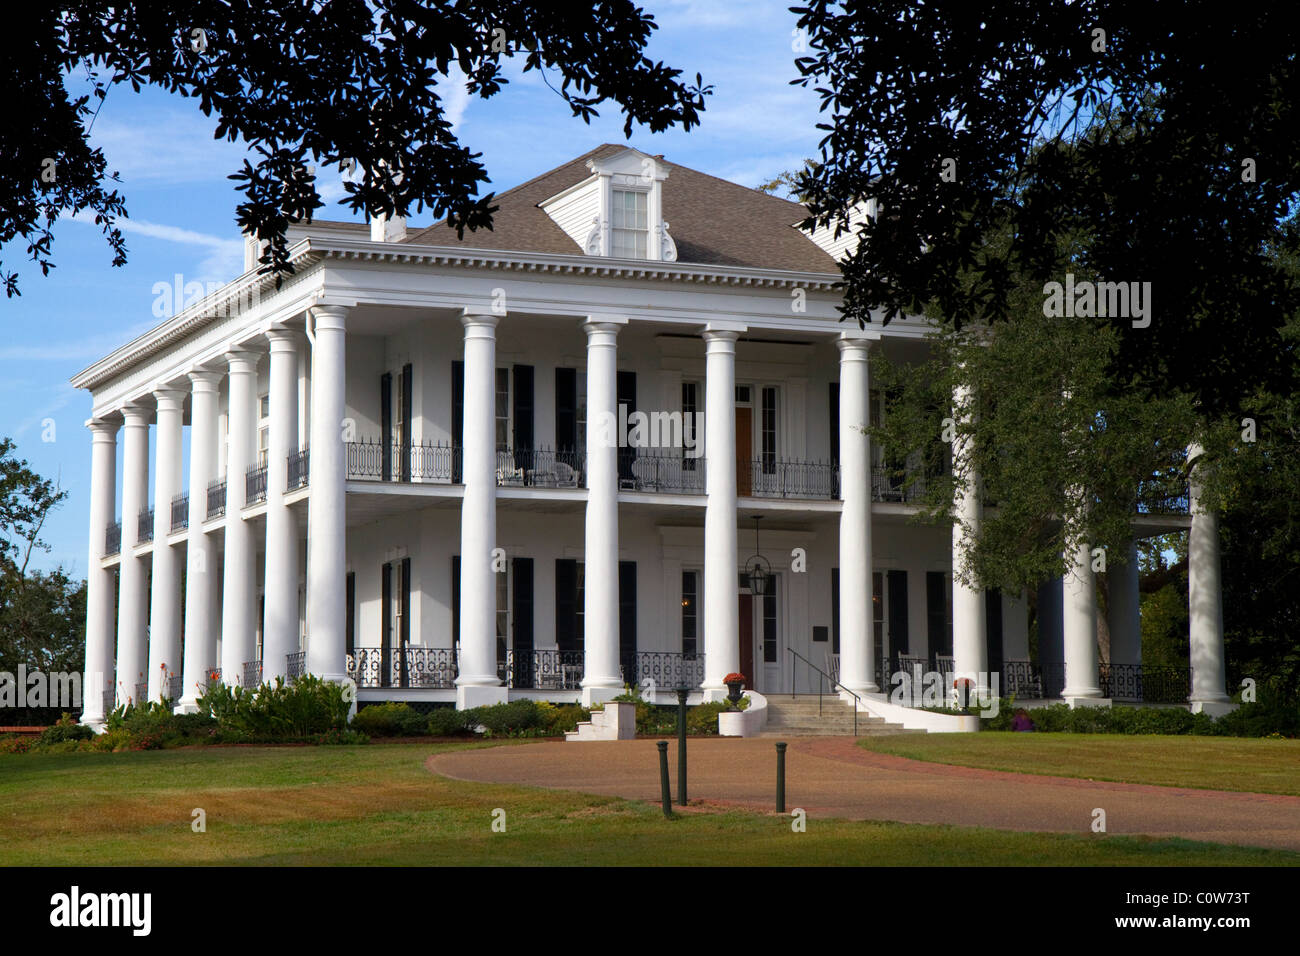 The Guest House Natchez antebellum mansion situé dans la région de Natchez, Mississippi, USA. Banque D'Images